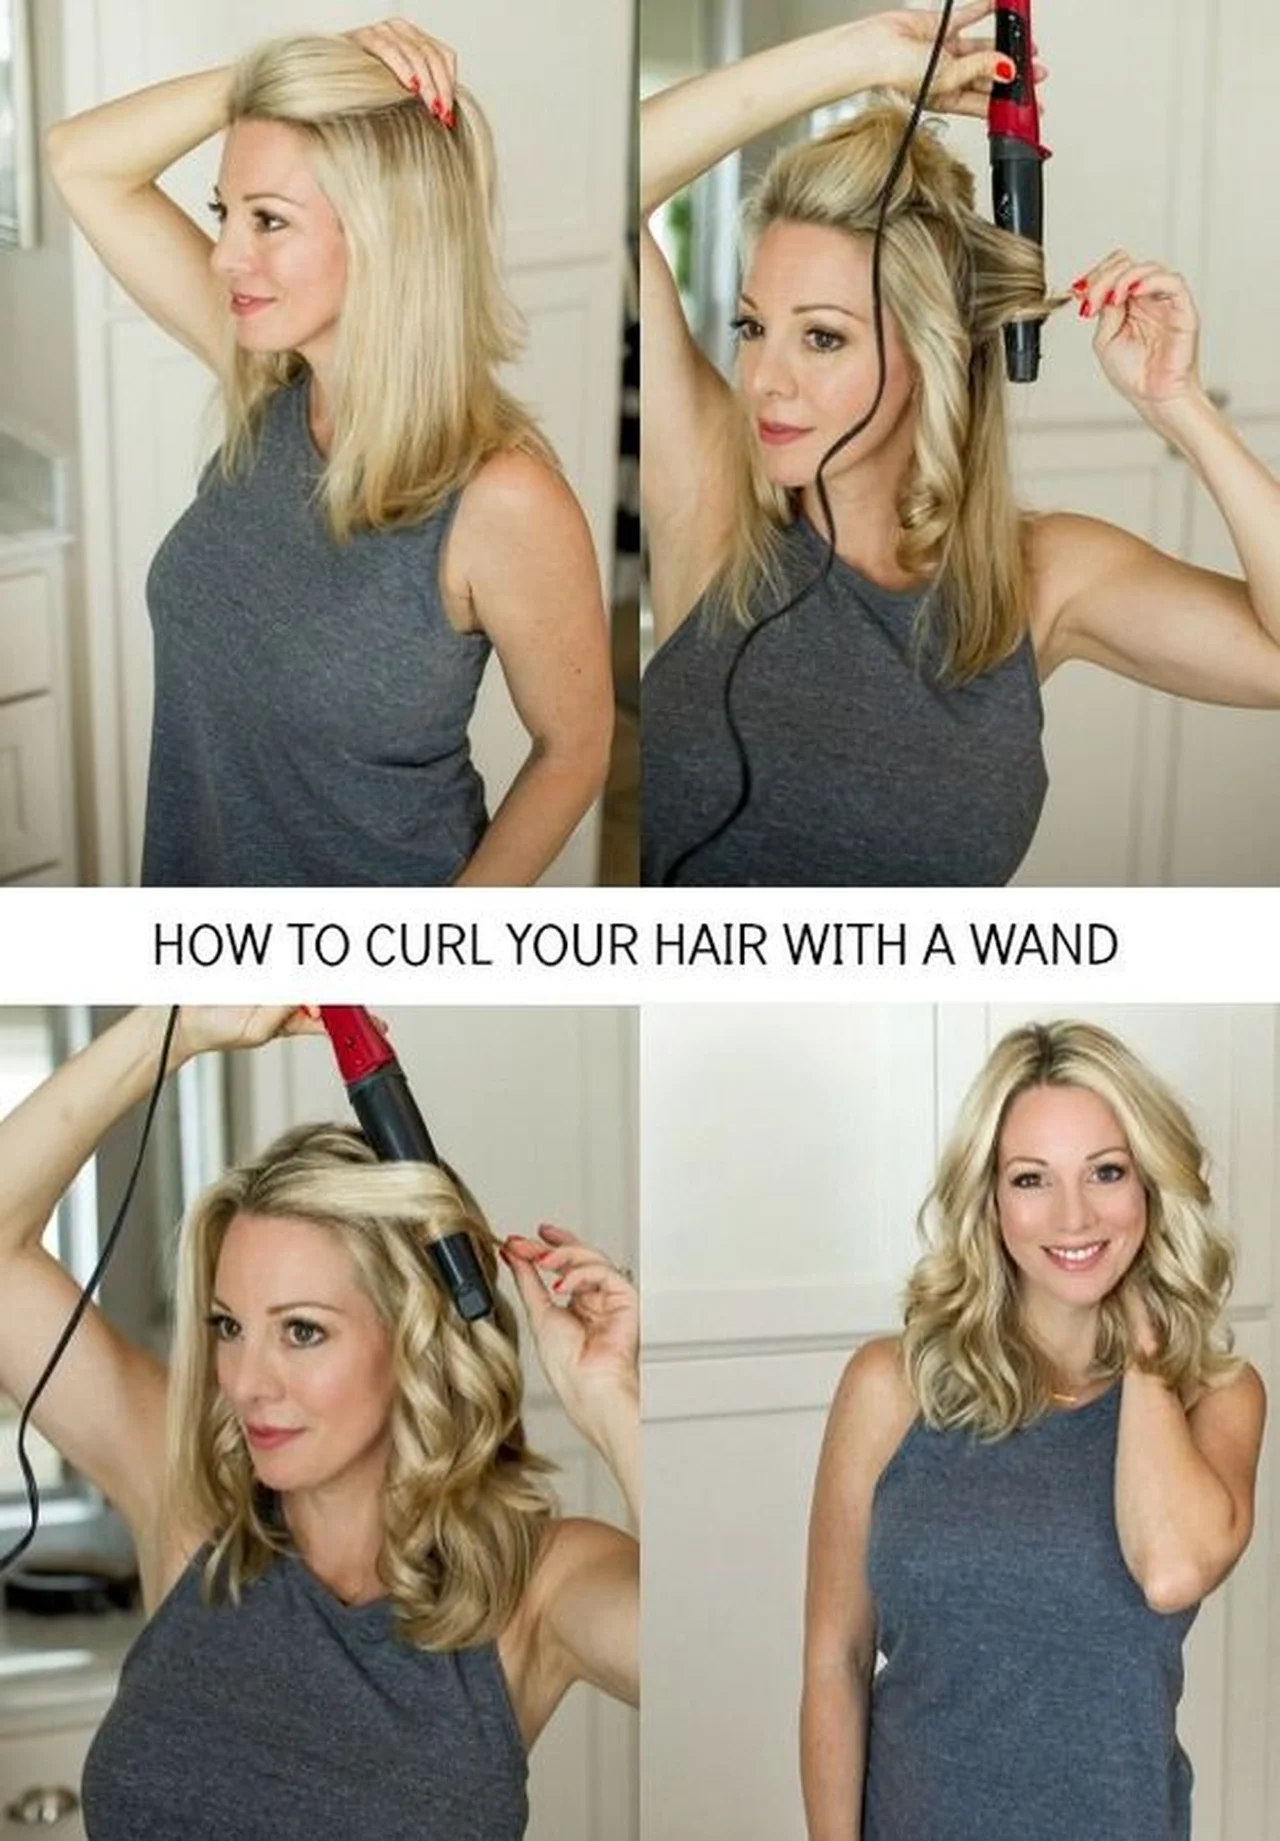 Jak kręcić włosy na lokówkę?